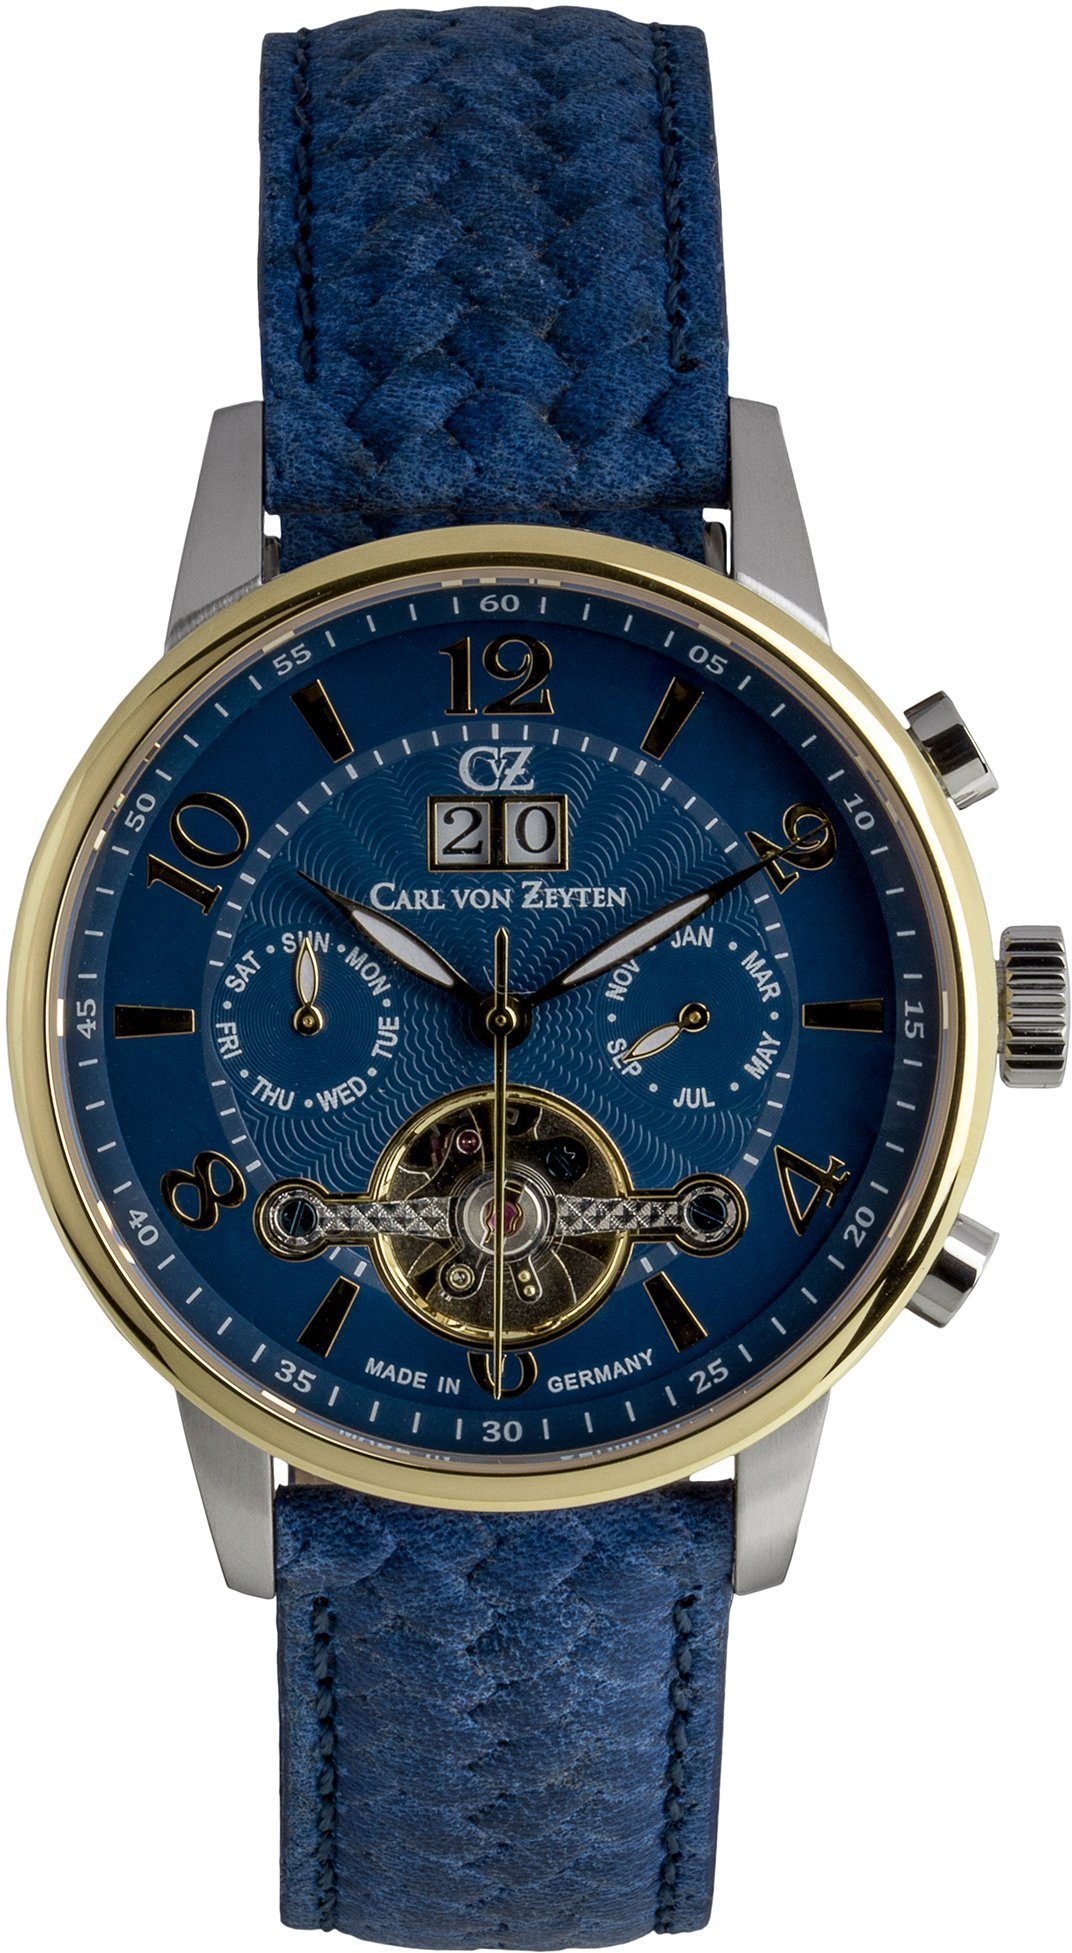 Carl von Zeyten Automatikuhr Bühl II, CVZ0074GBLS, Armbanduhr, Herrenuhr, offene Unruh, Made in Germany, Mechanische Uhr